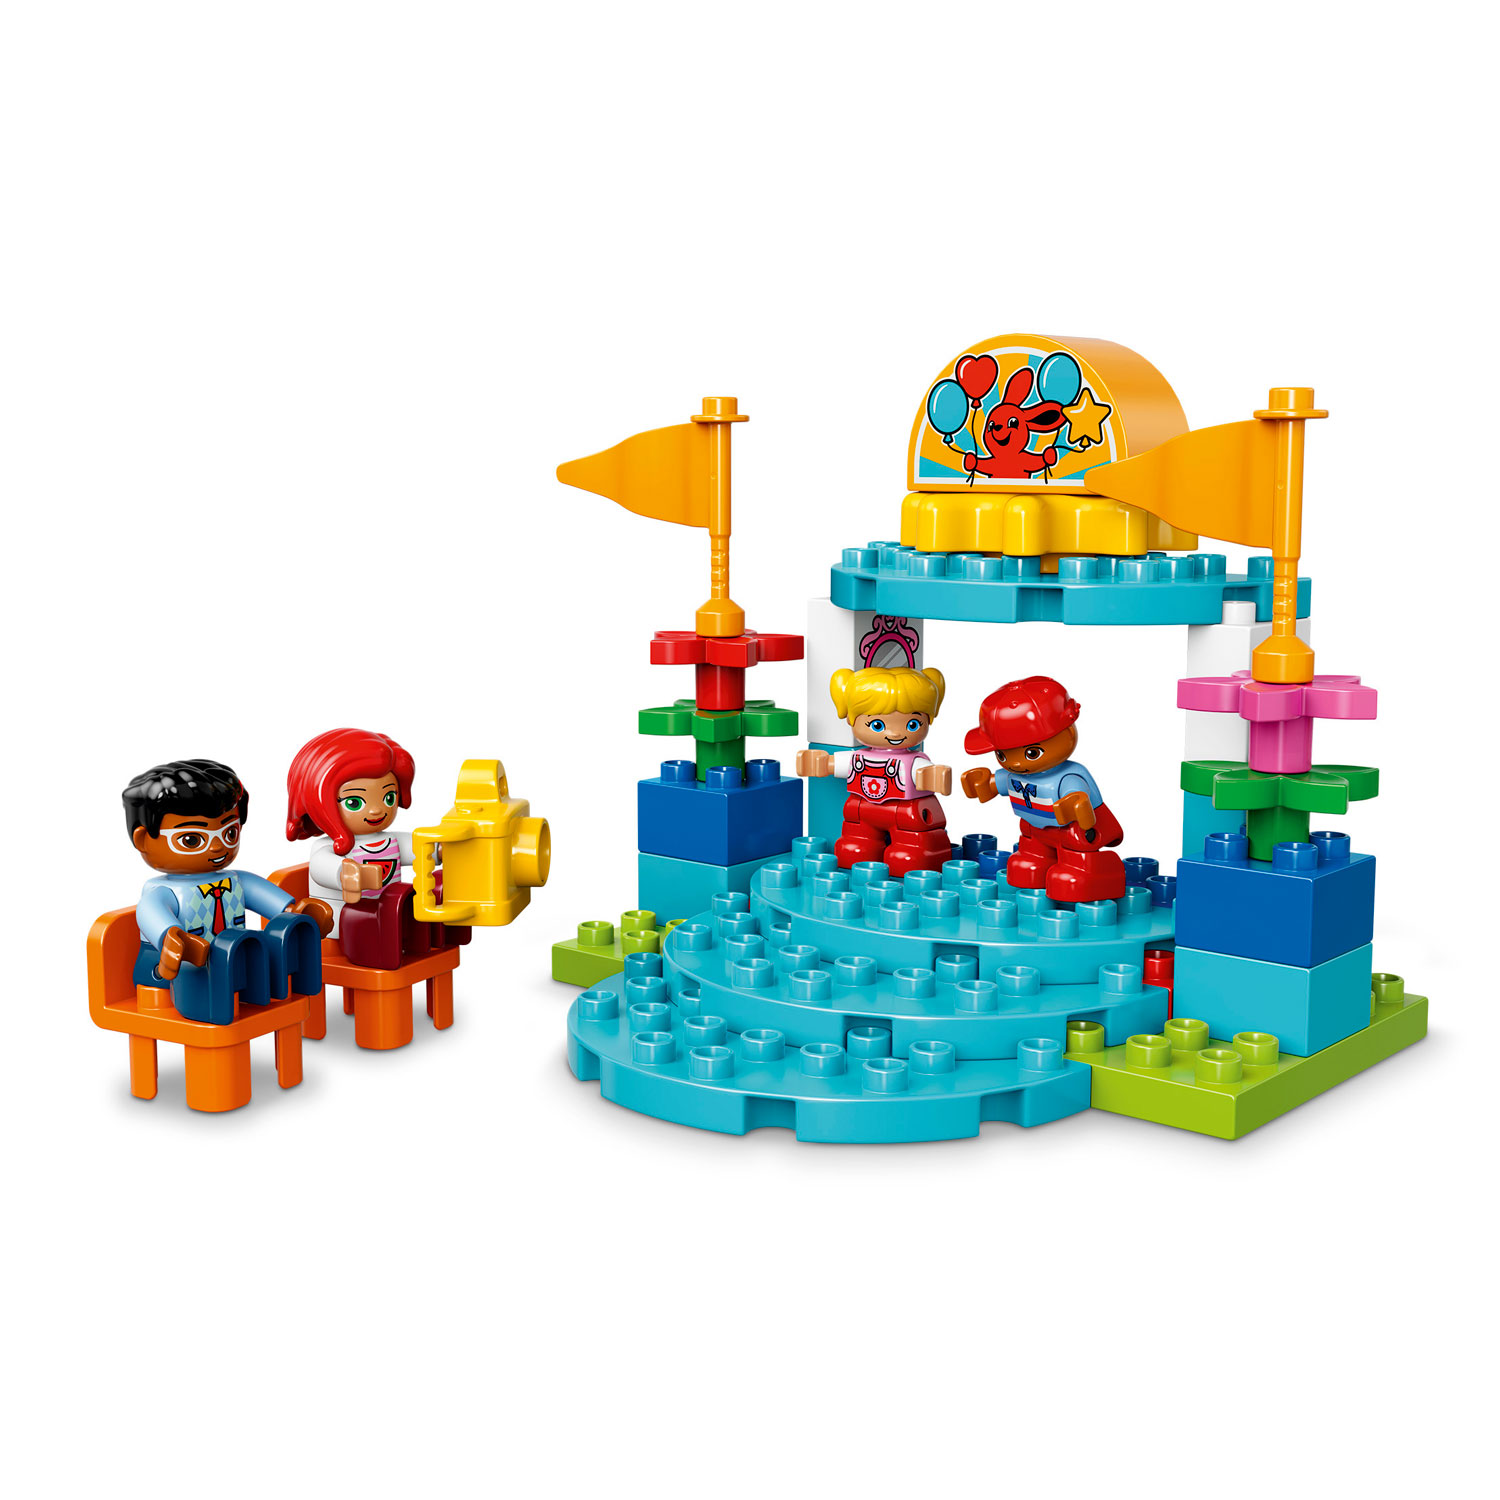 LEGO DUPLO 10841 Familiekermis 